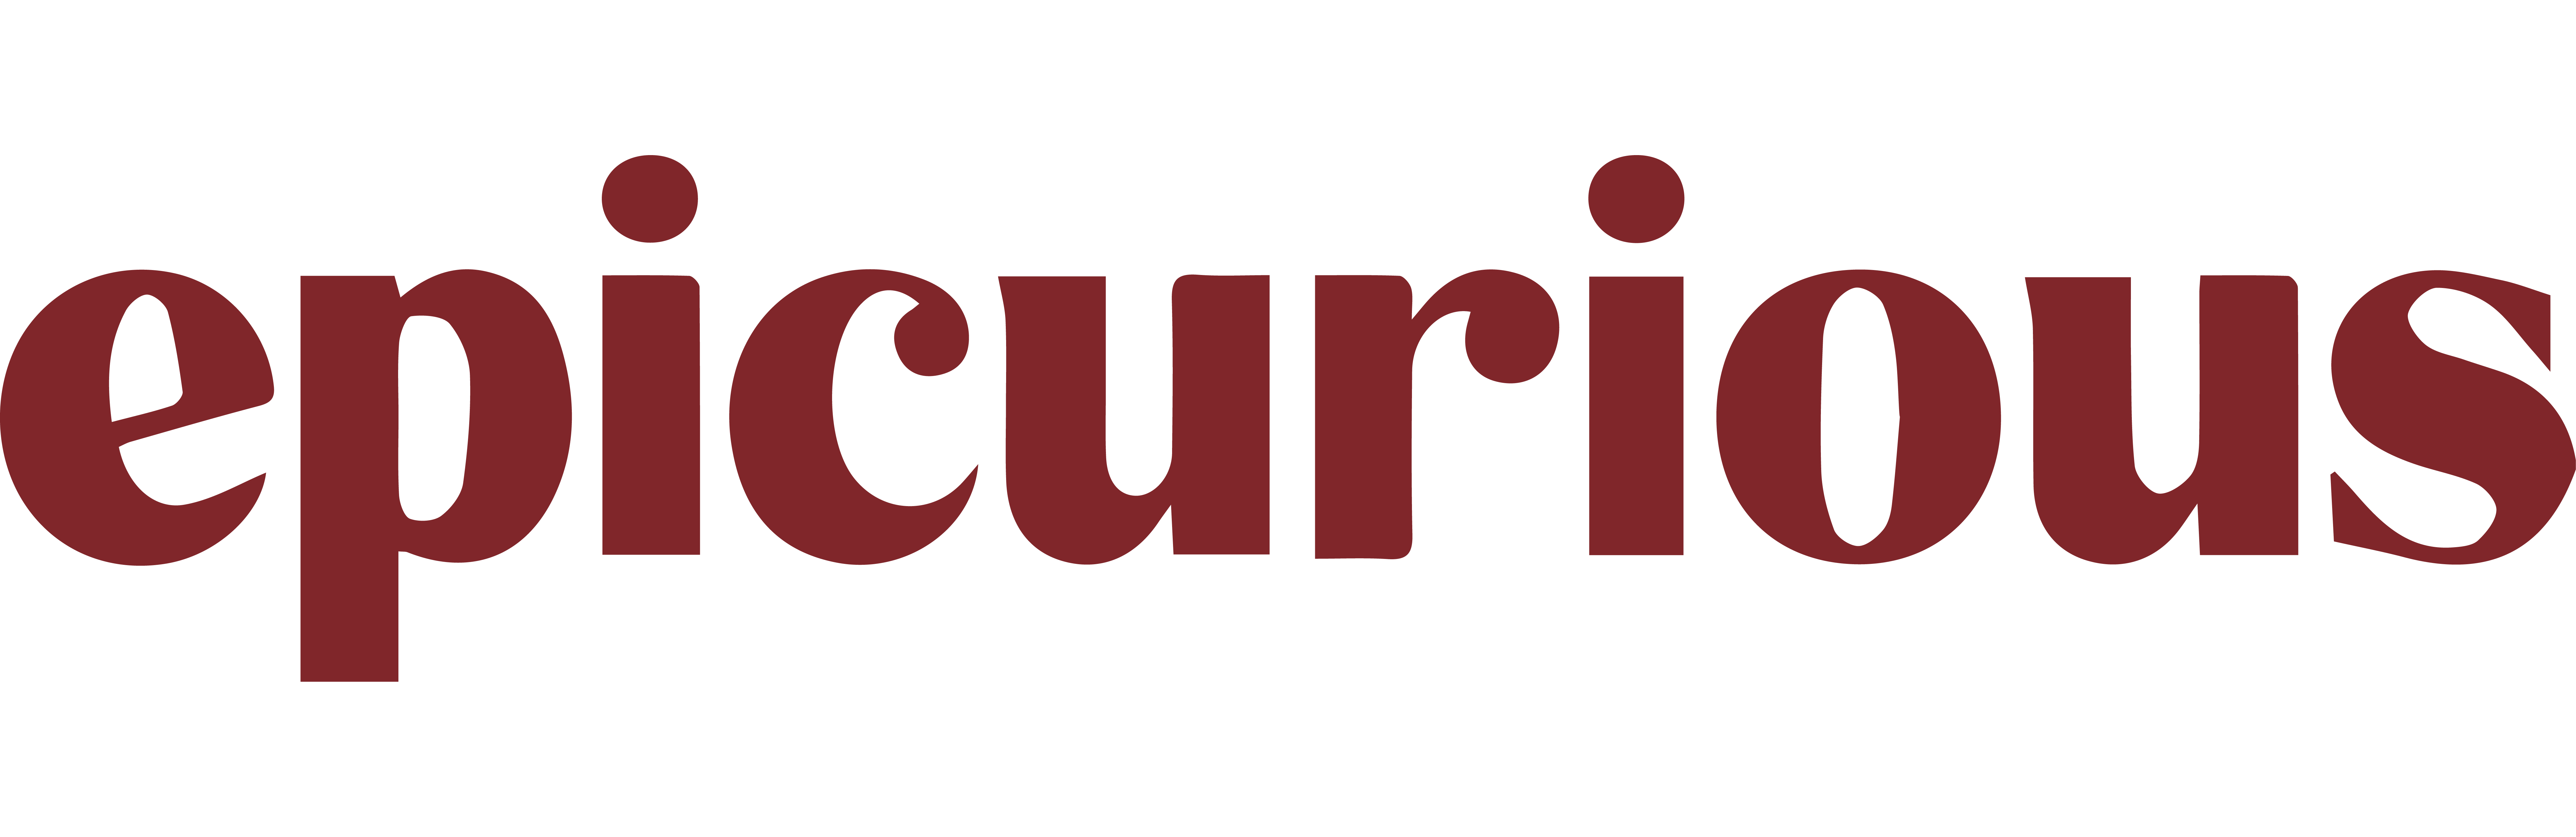 epicurious logo